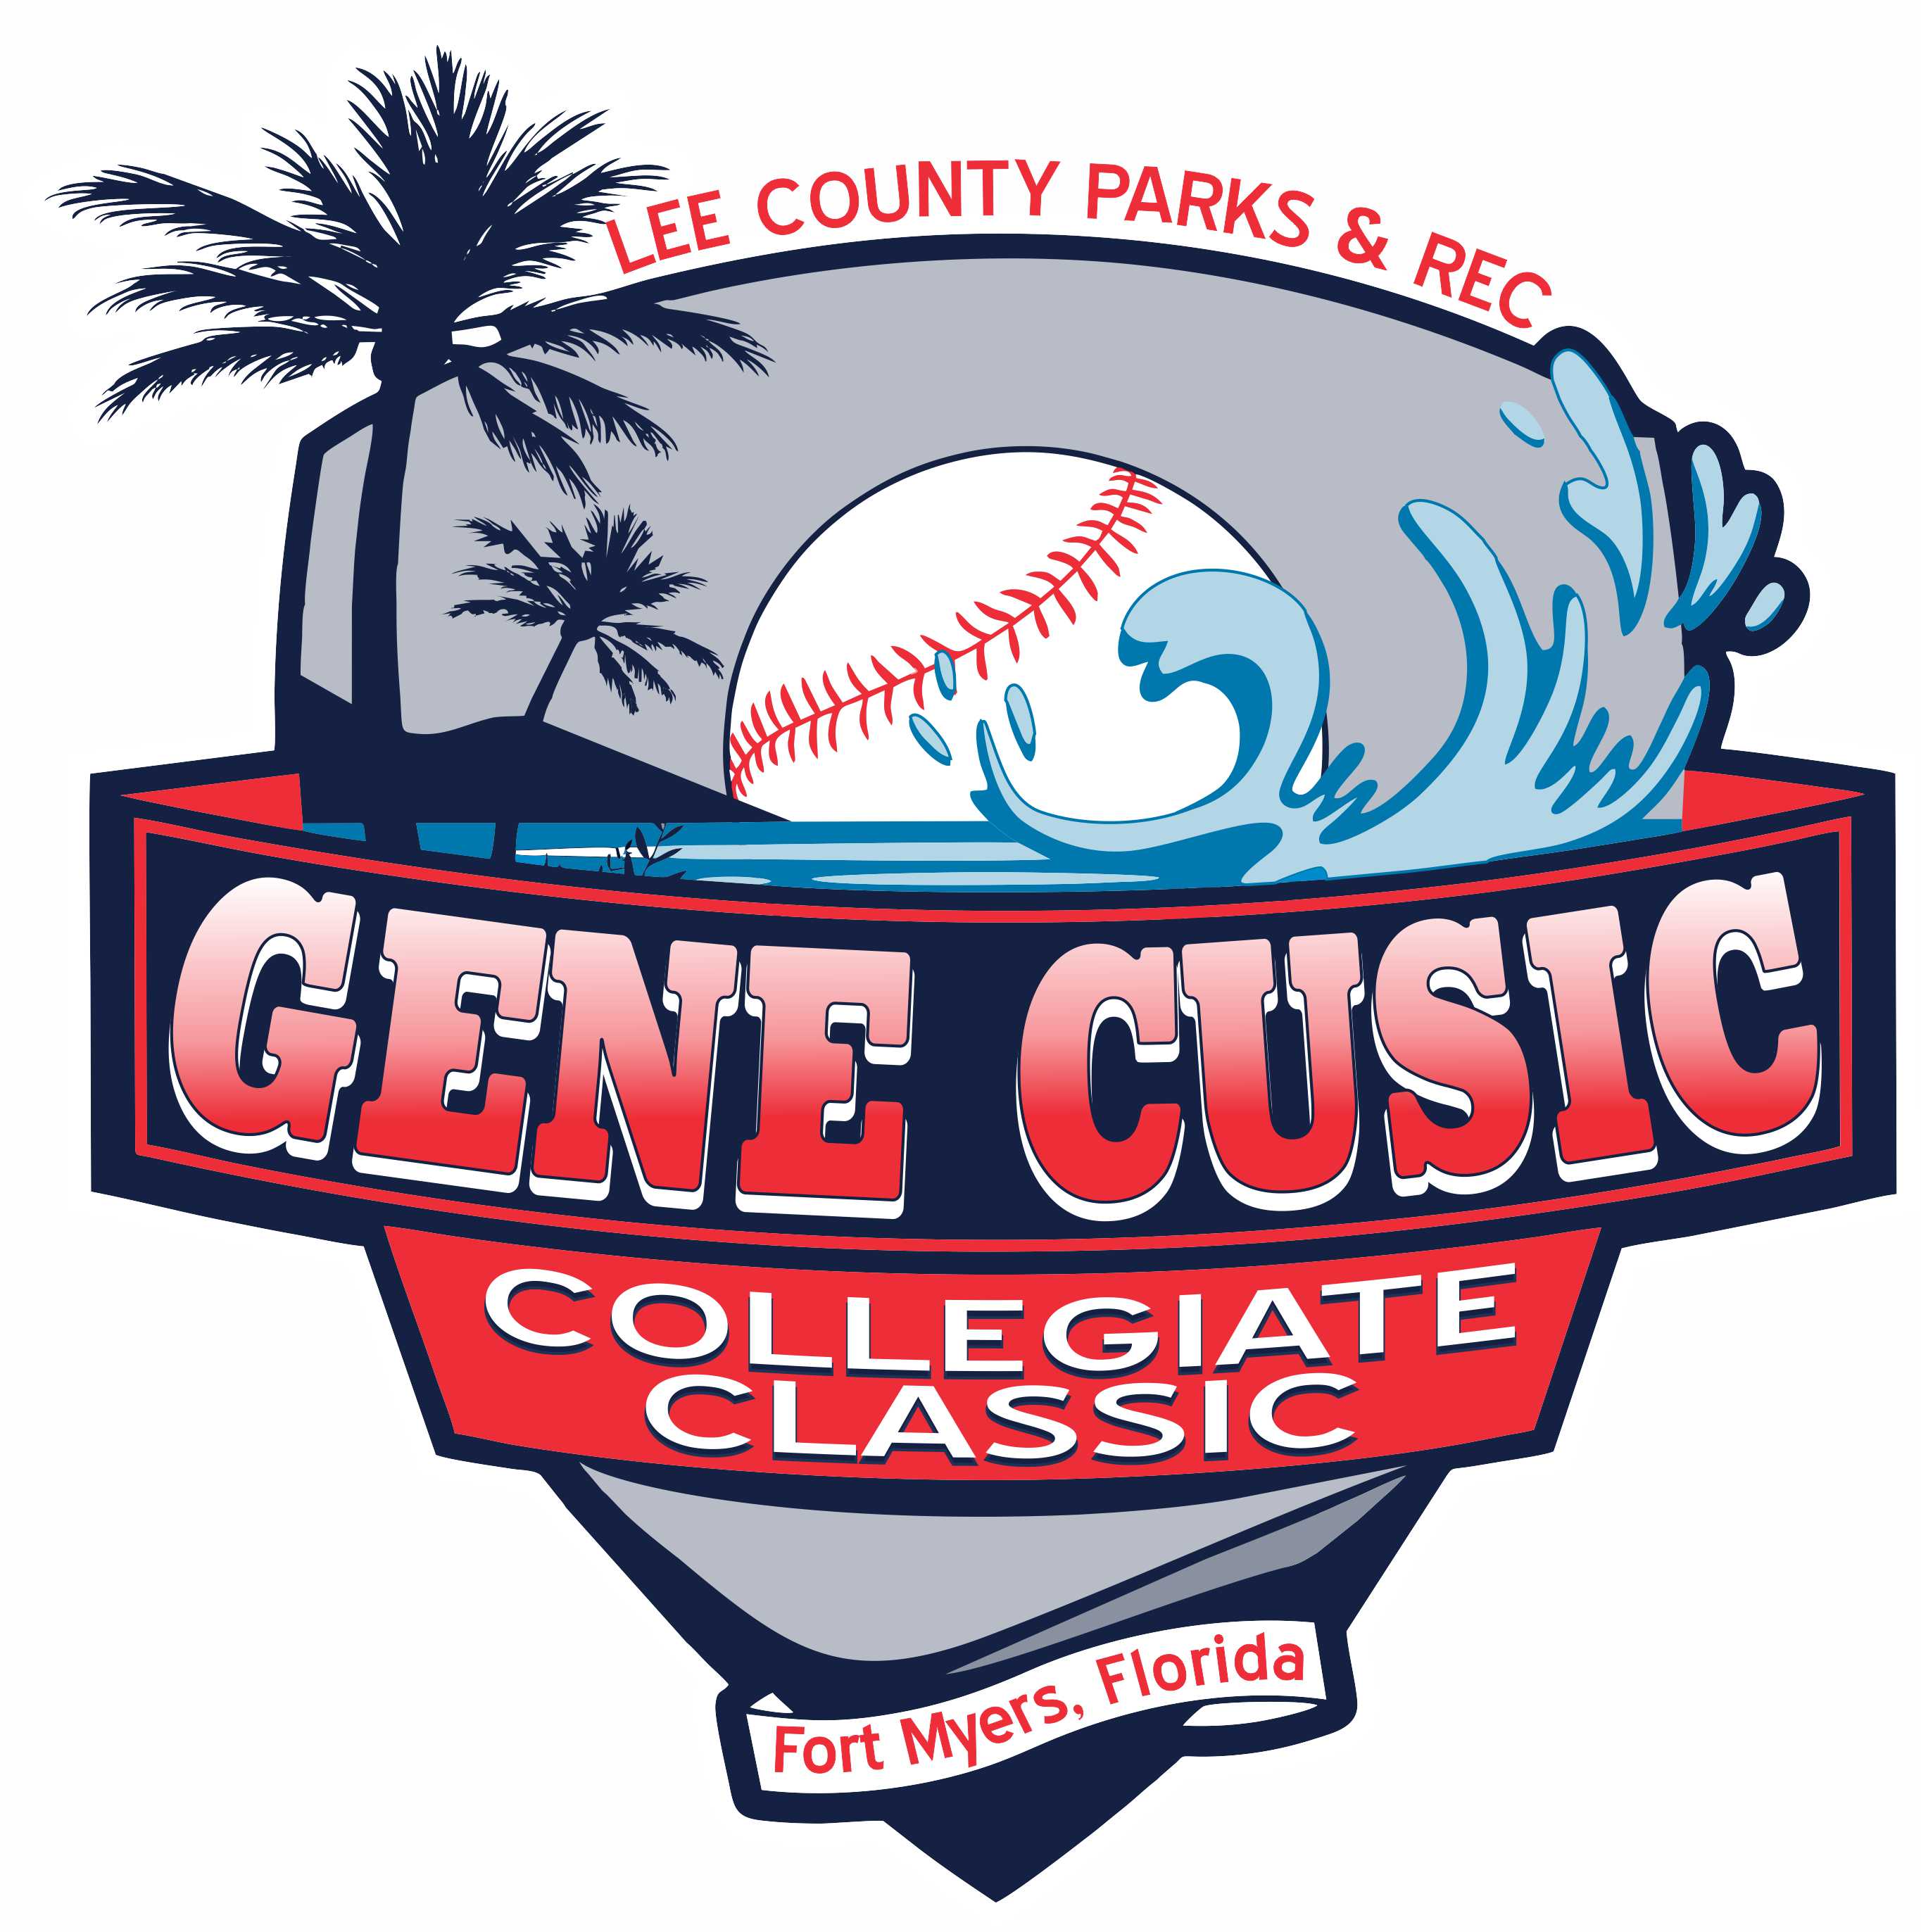 33rd Annual Gene Cusic Collegiate Classic